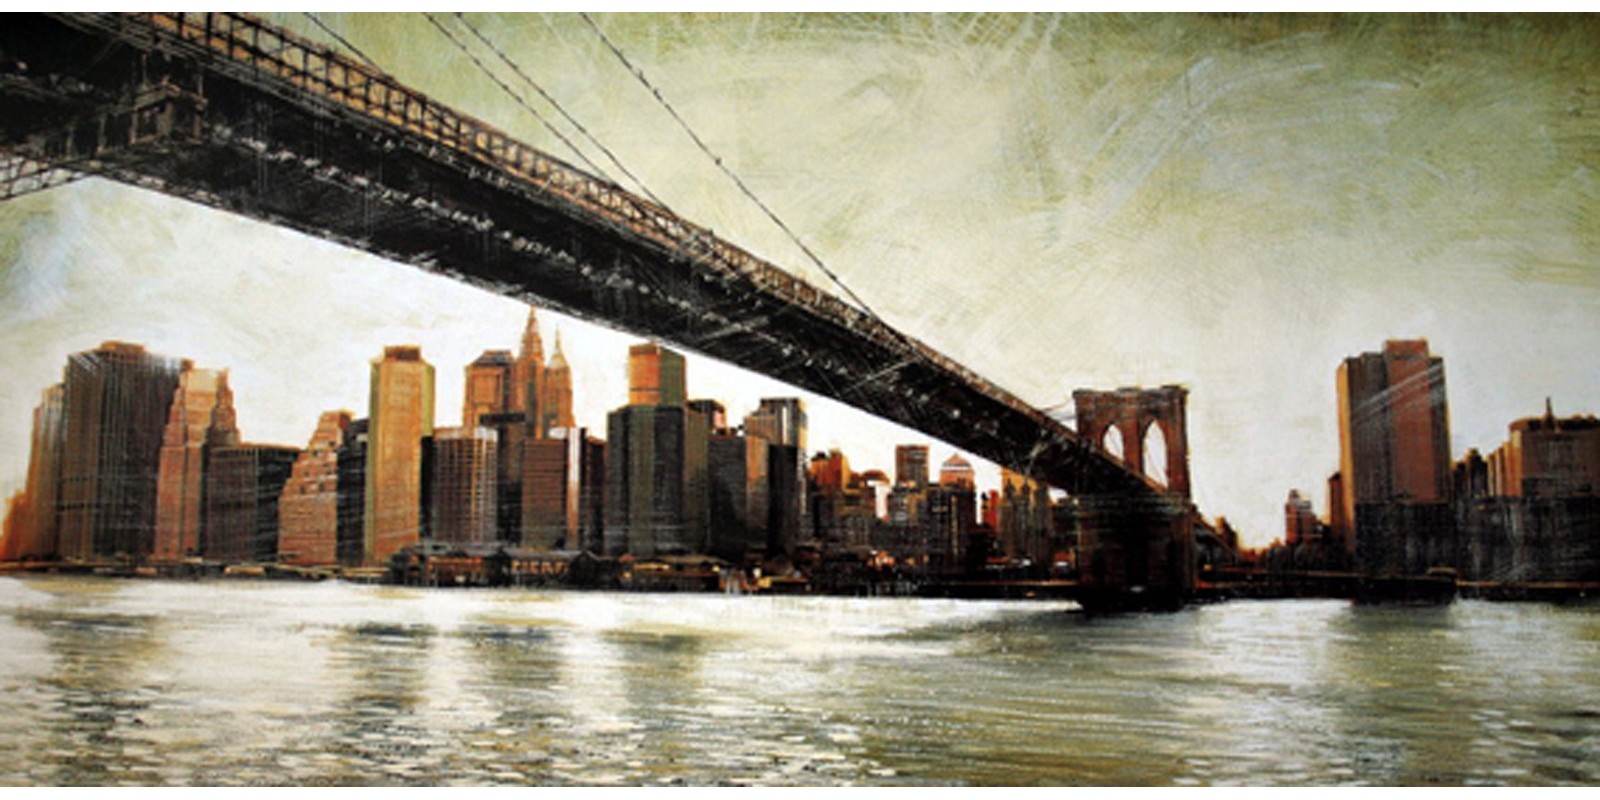 Matthew Daniels - Brooklyn Bridge View